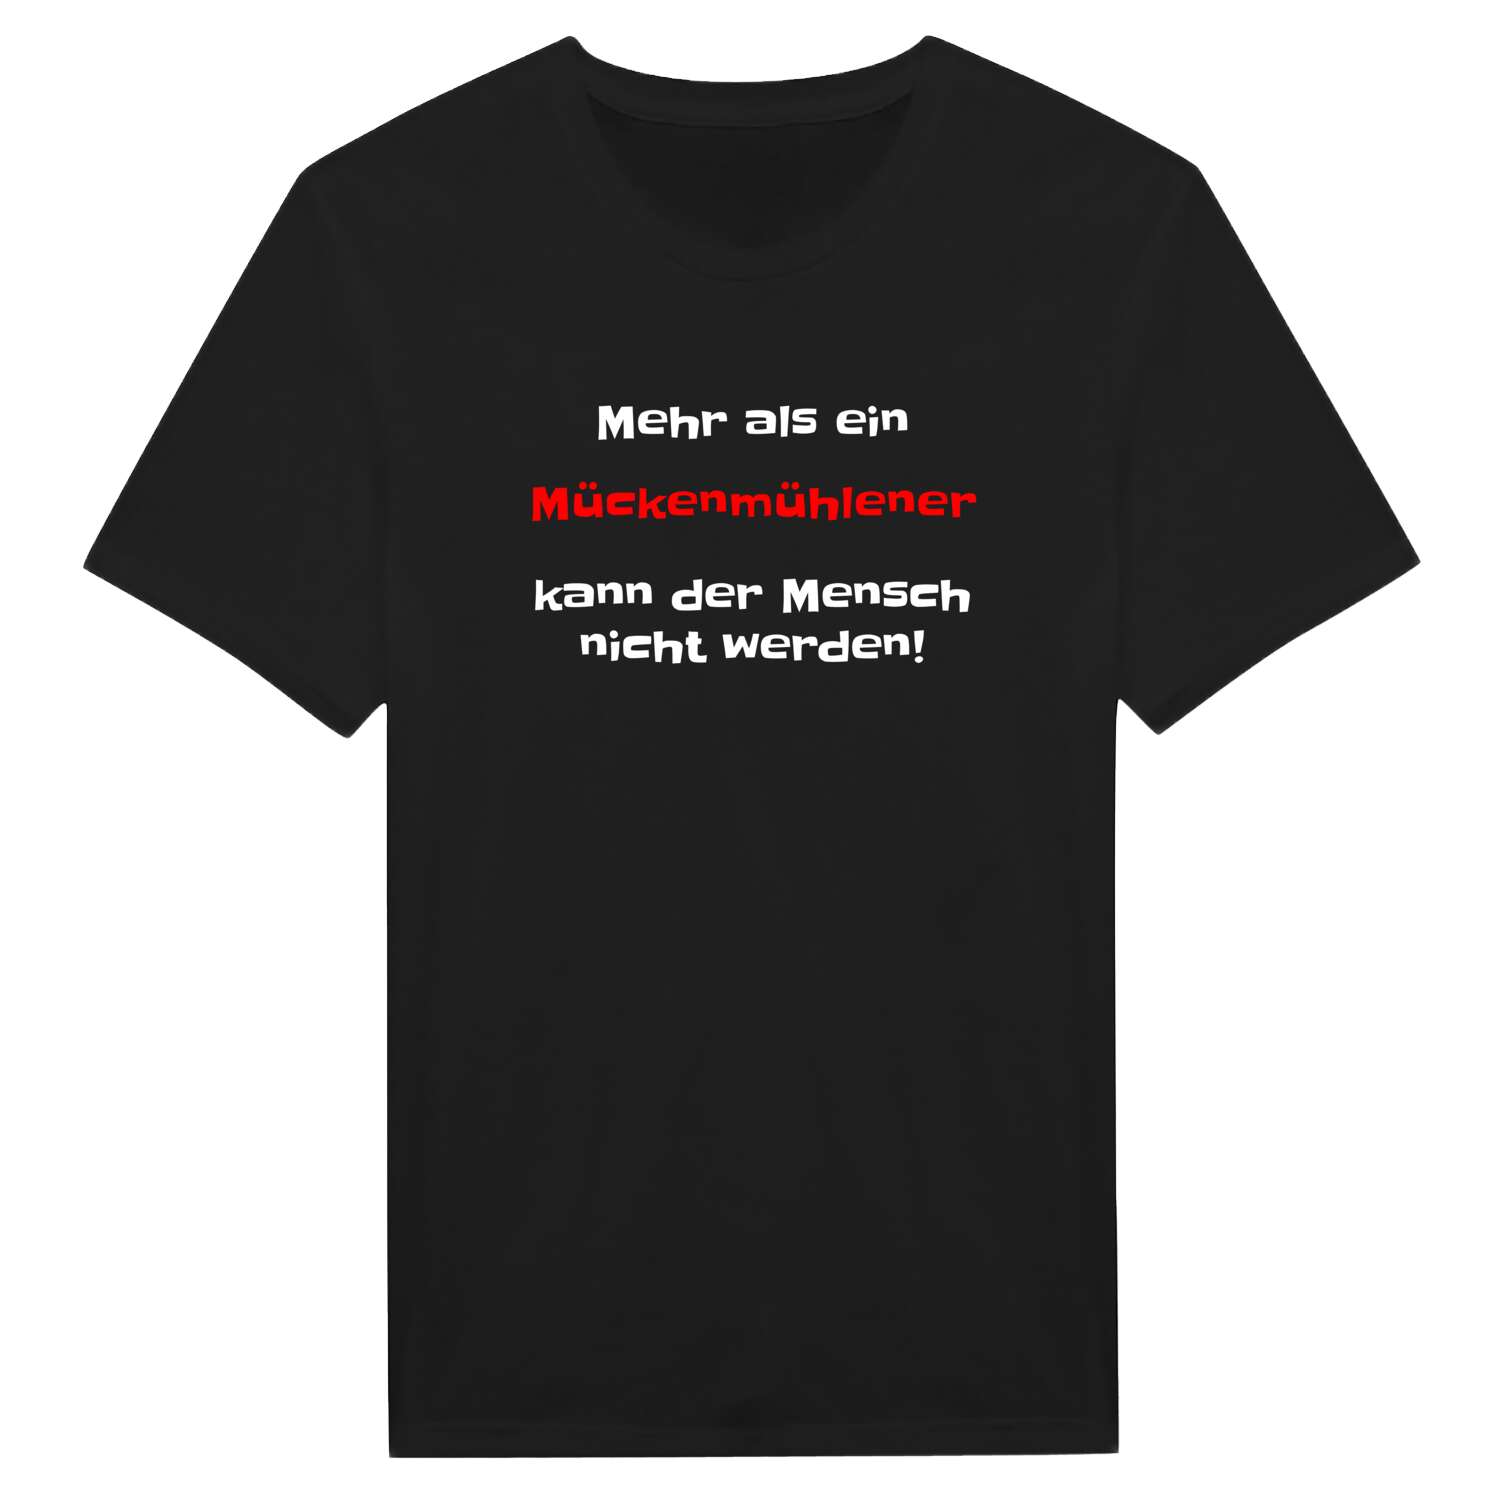 Mückenmühle T-Shirt »Mehr als ein«